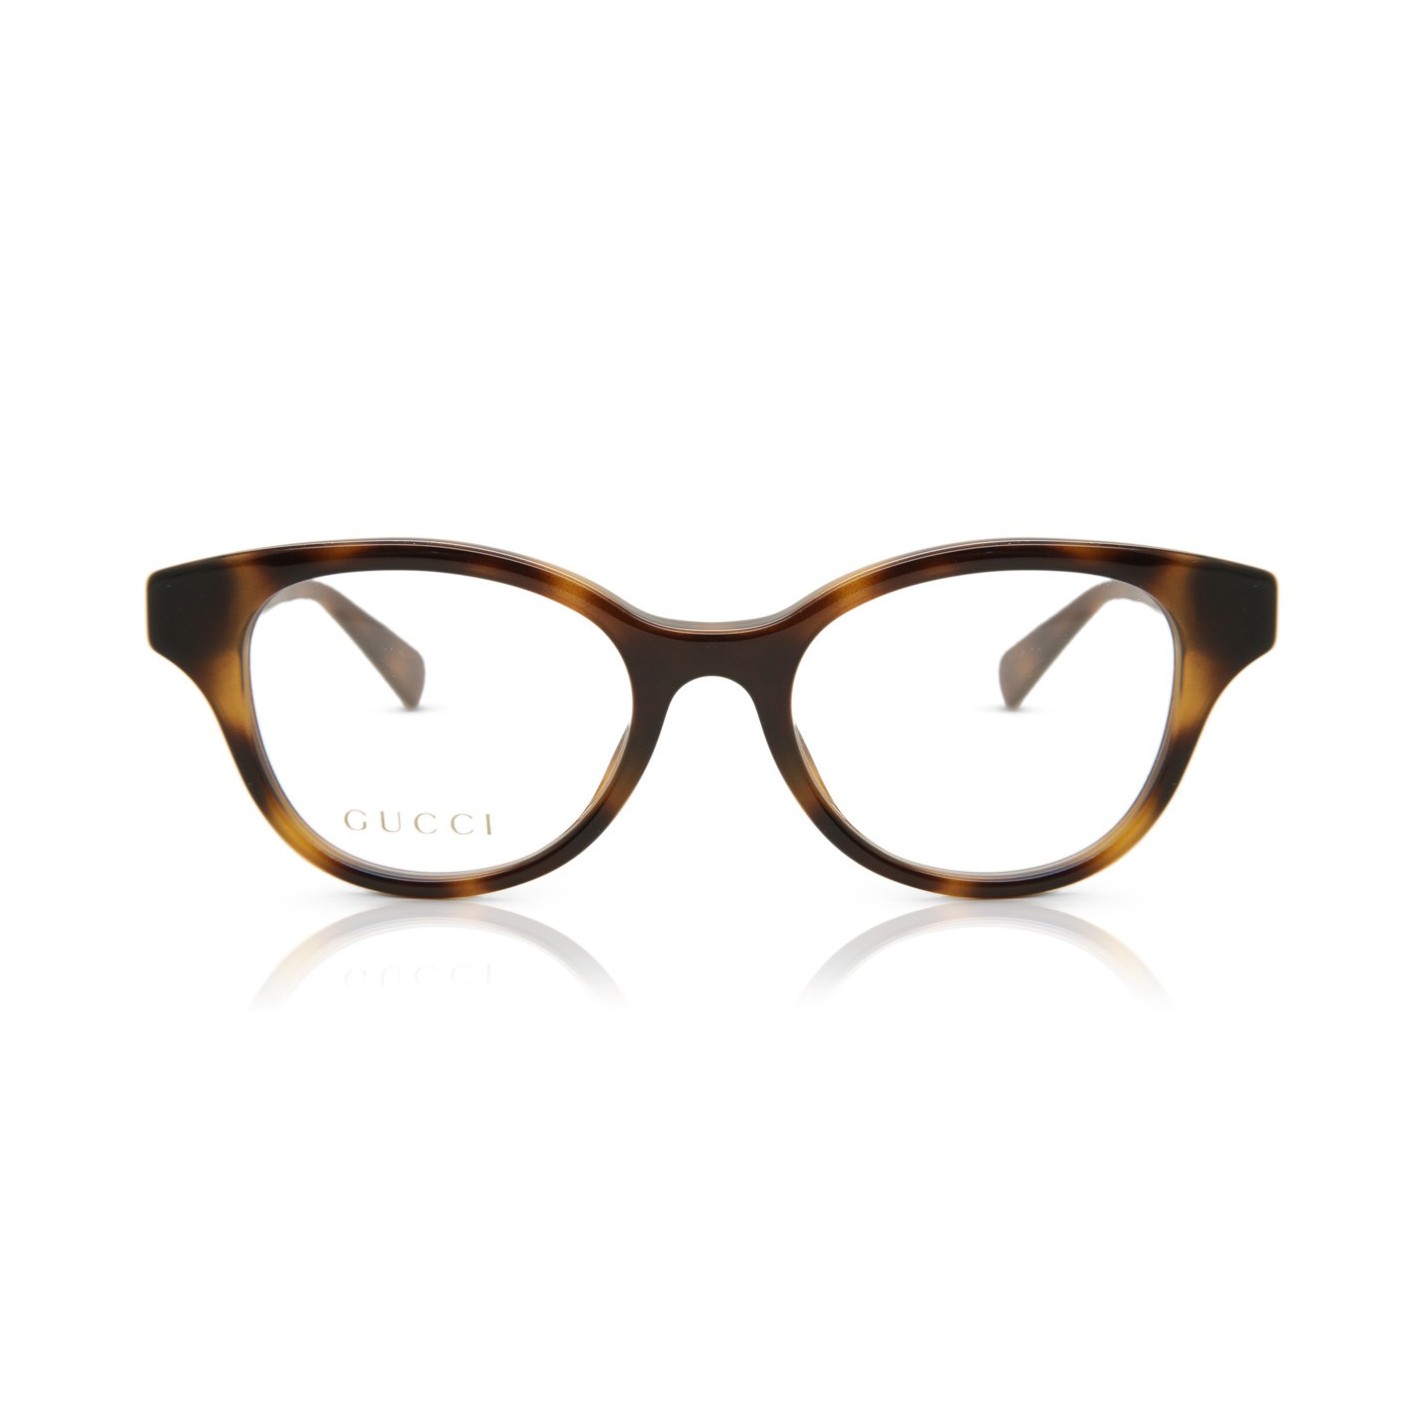 Estás gafas de Lujo te marcarán la diferencia combinandolas con tu look más exclusivo. Las gafas extravagancia,